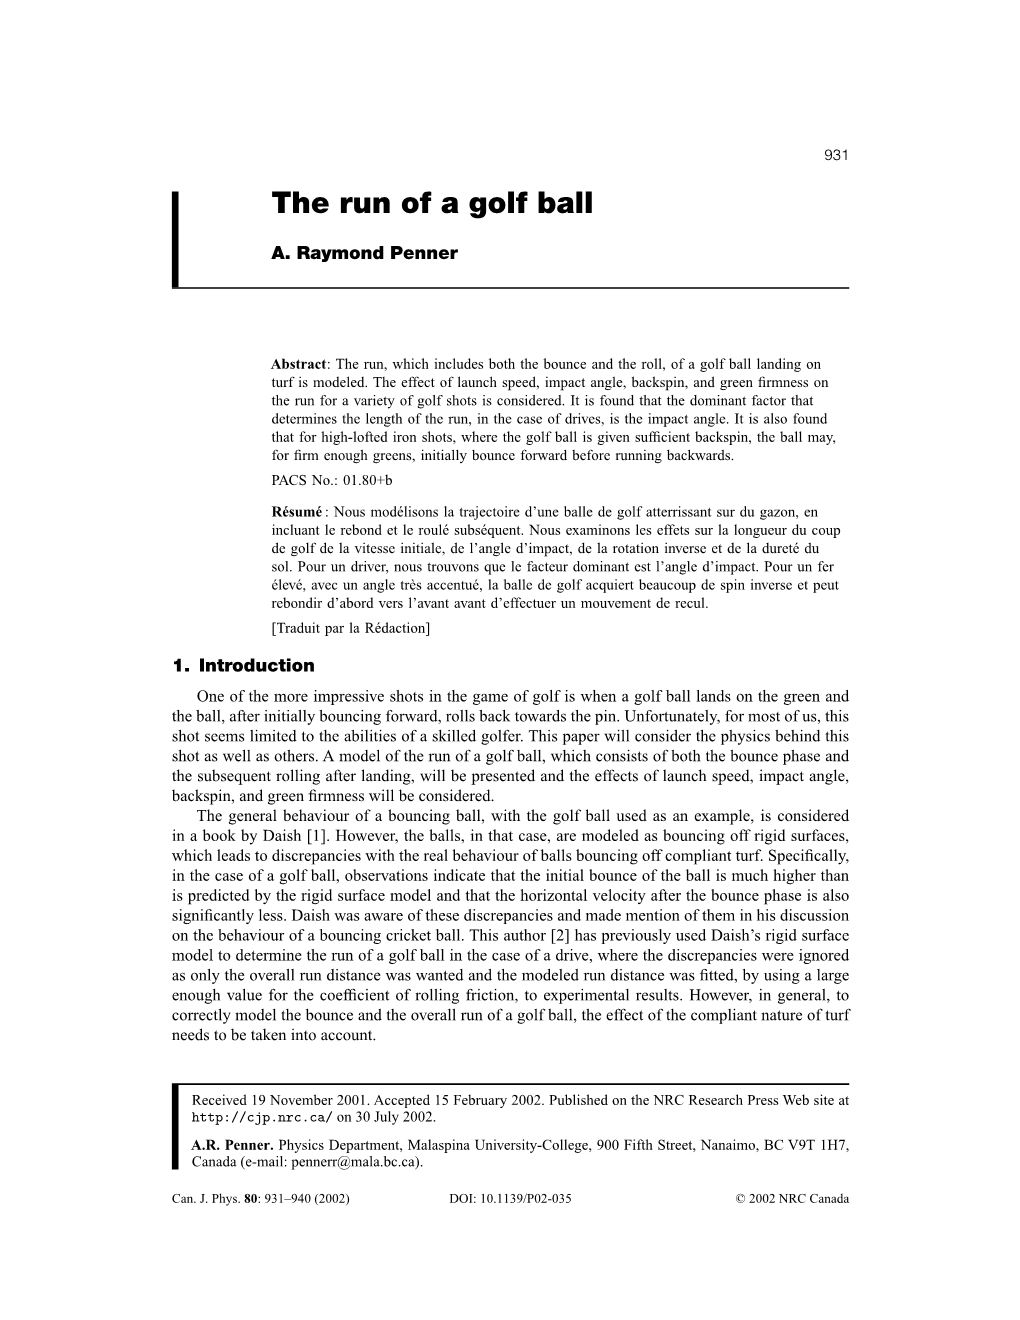 The Run of a Golf Ball